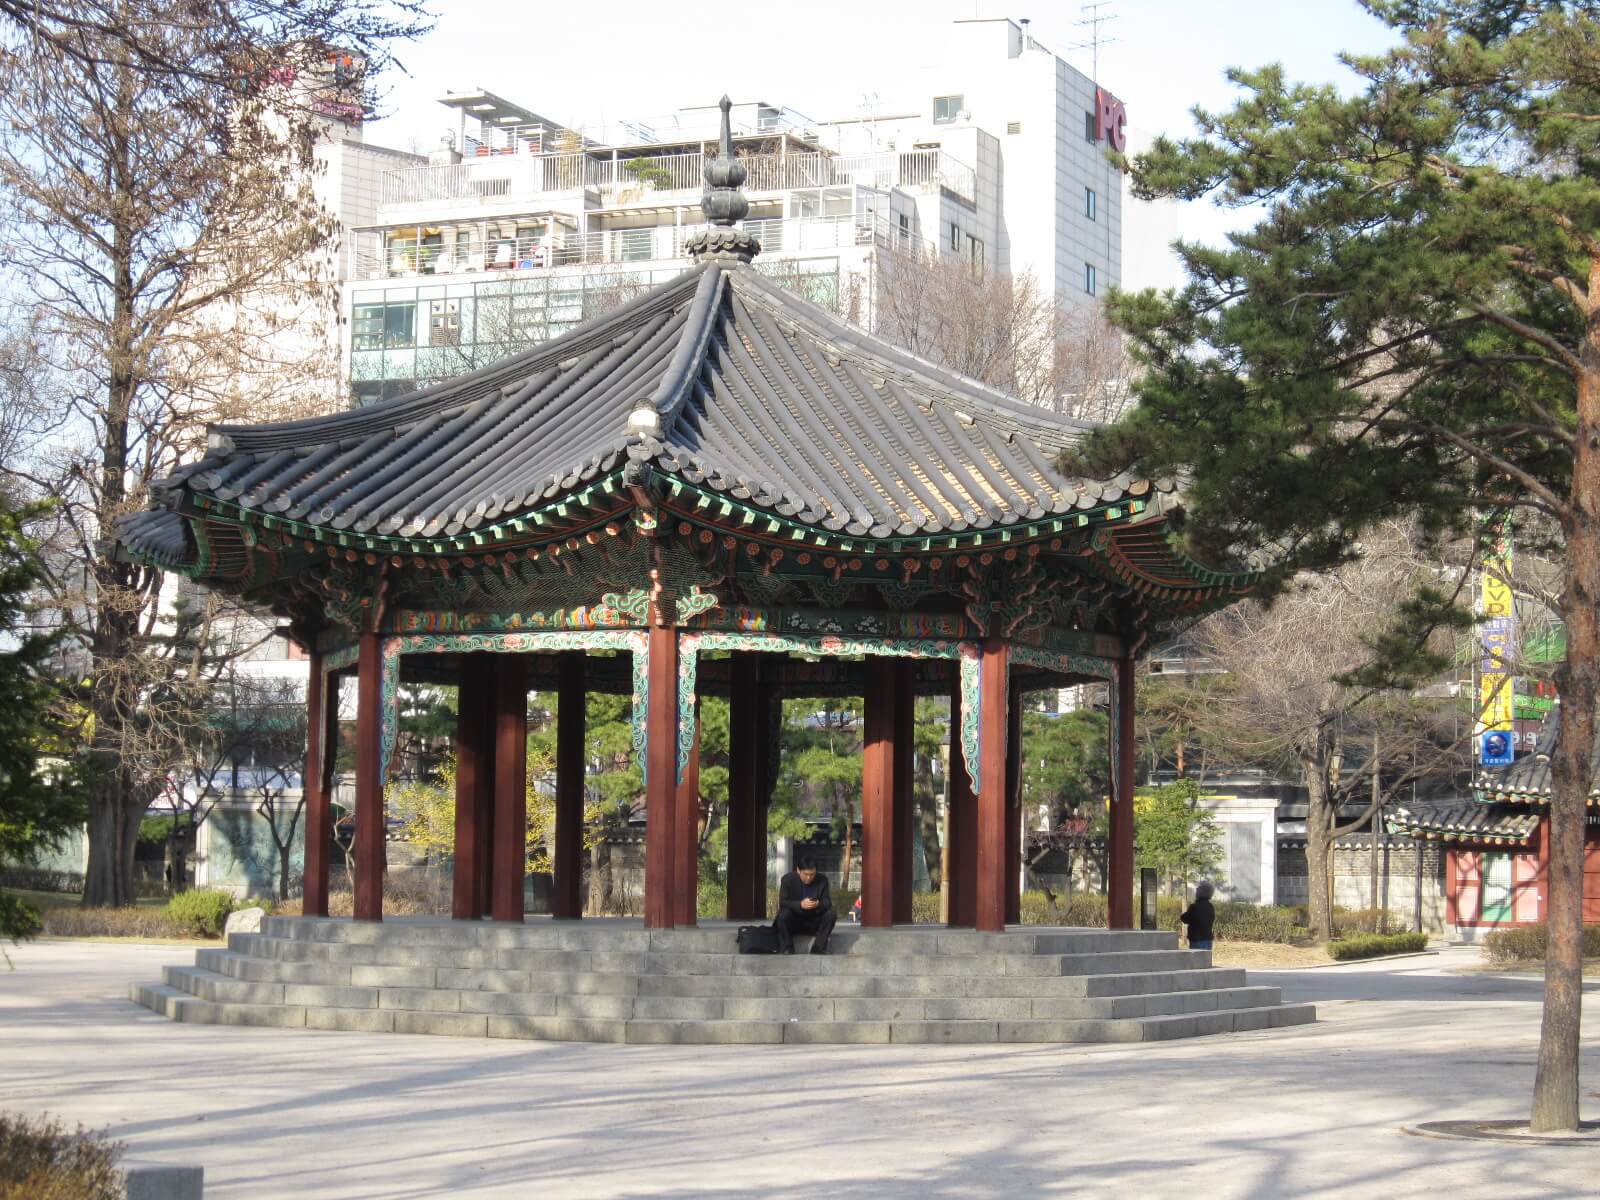 Seoul park